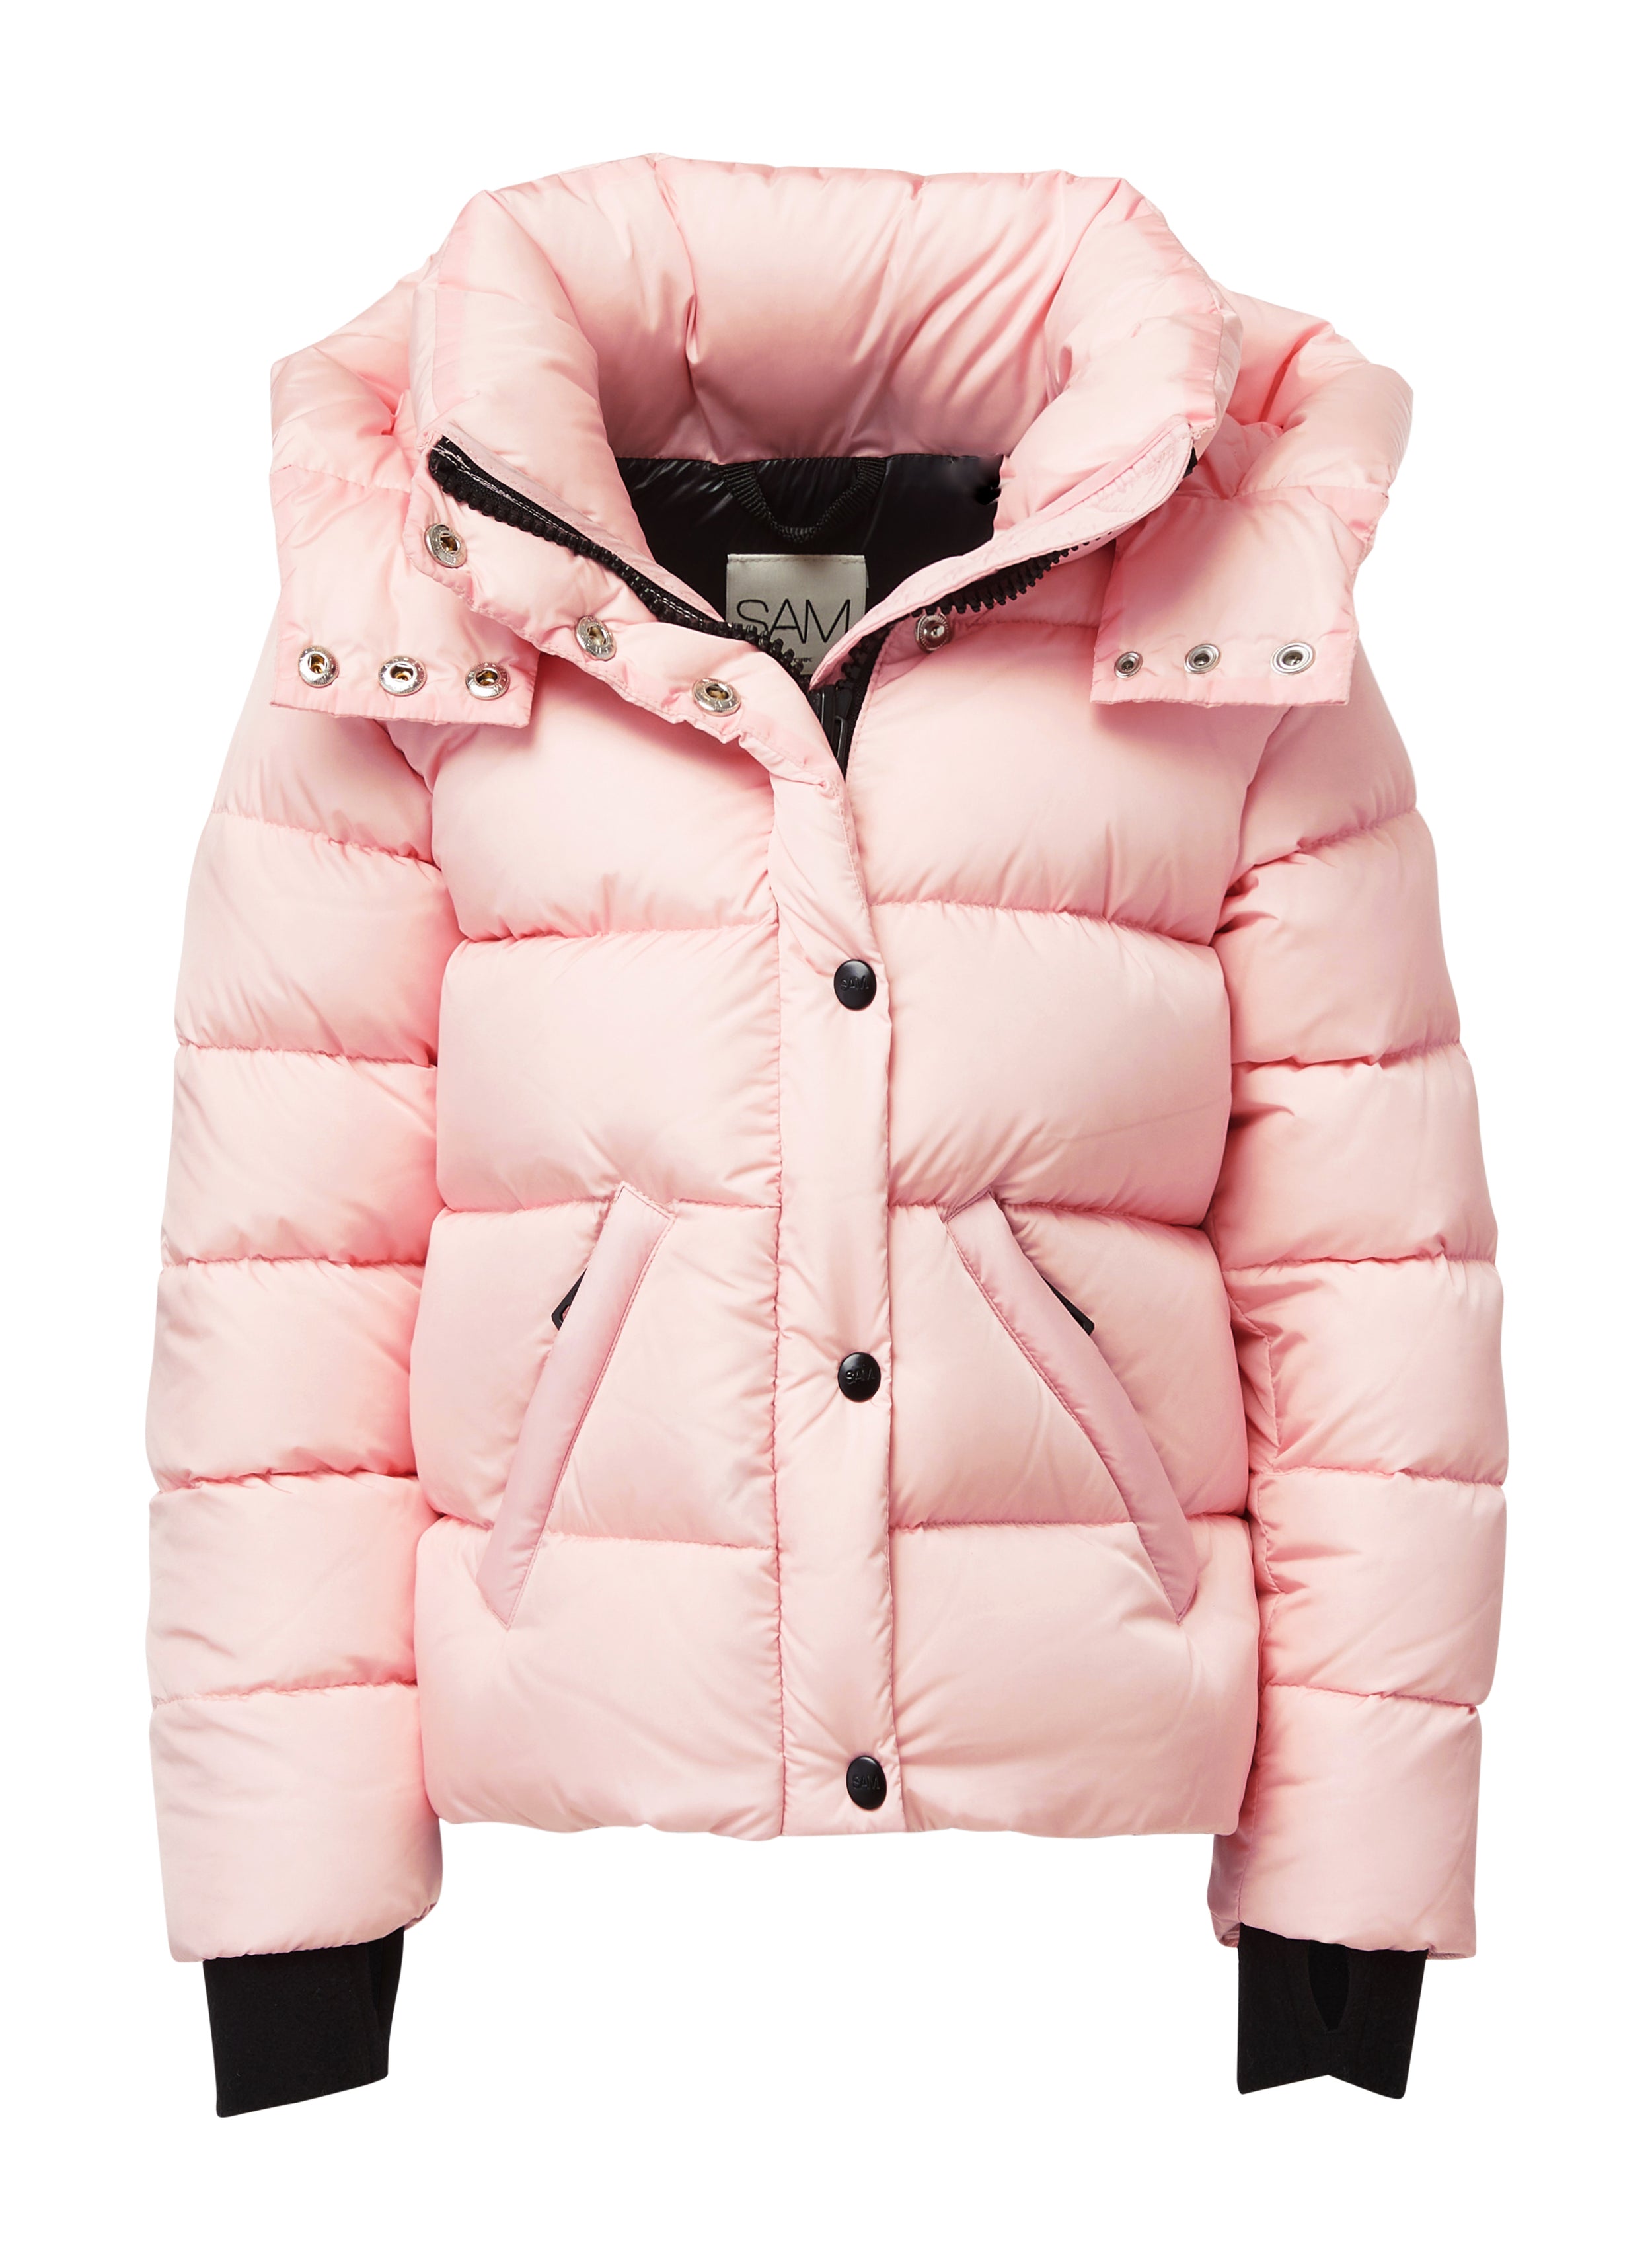 Shop Girls Berghaus Jackets | Berghaus Coats Girls | Millets